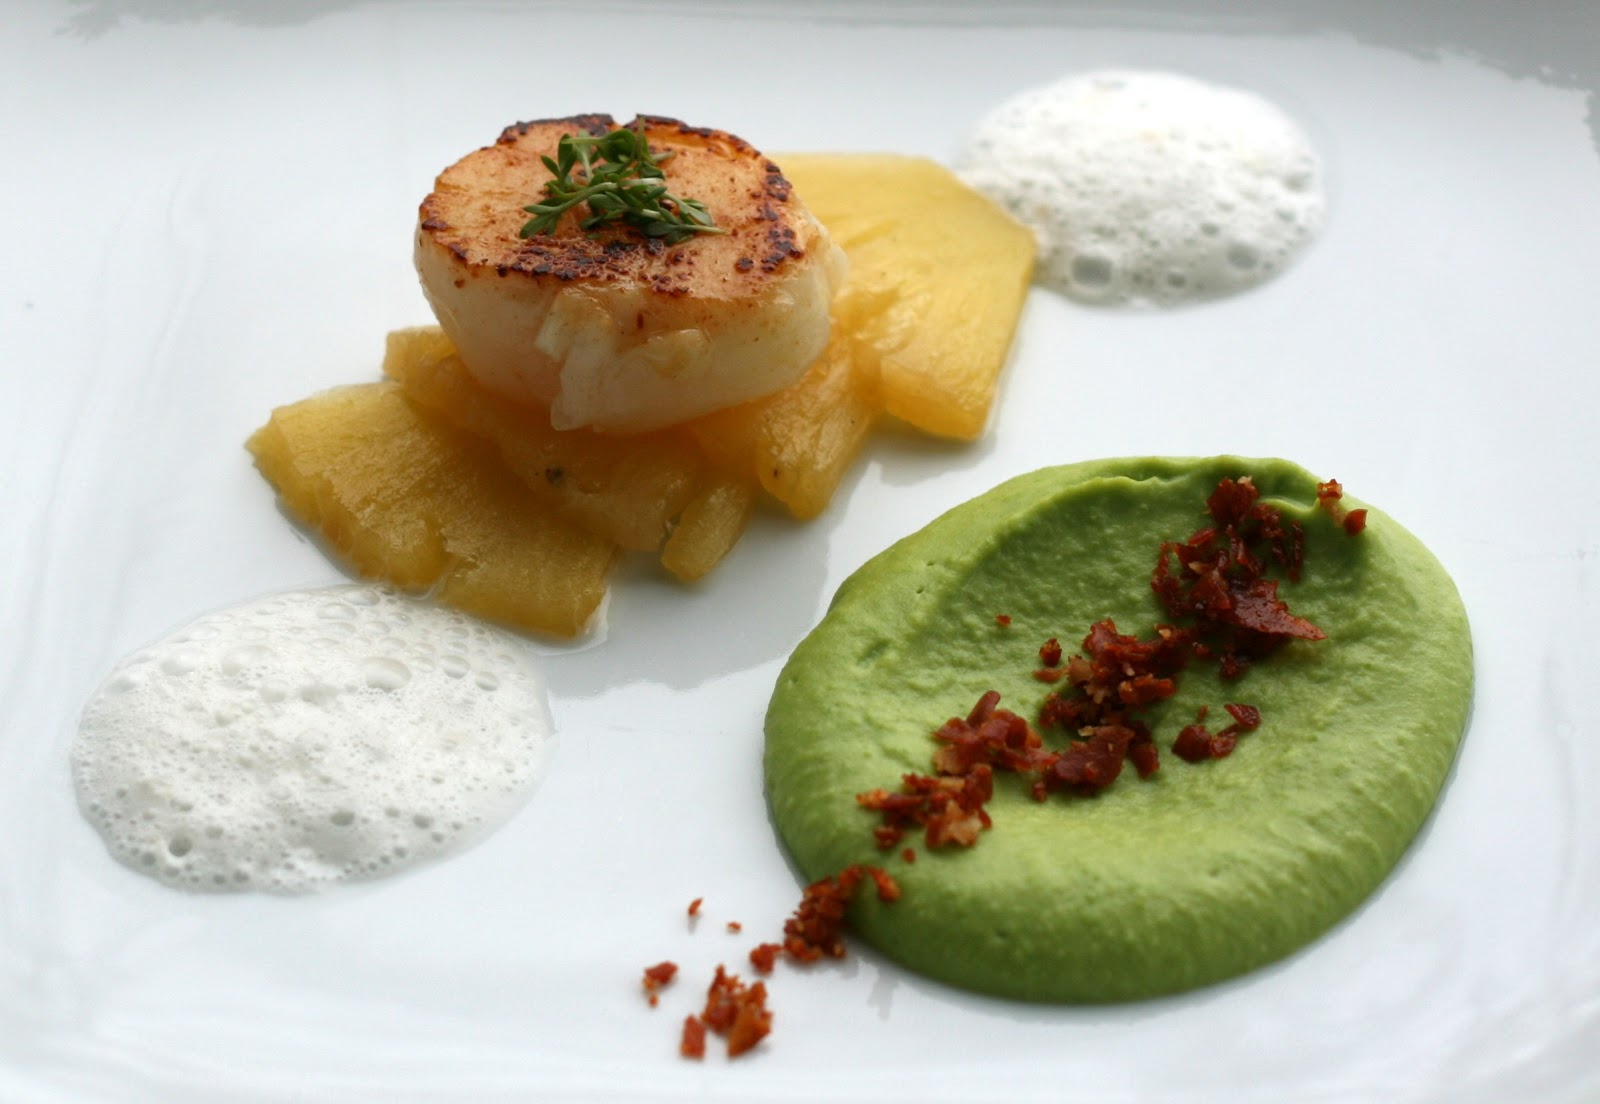 bushcooks kitchen: Jakobsmuschel mit Ananas, Erbsenpüree und Speck